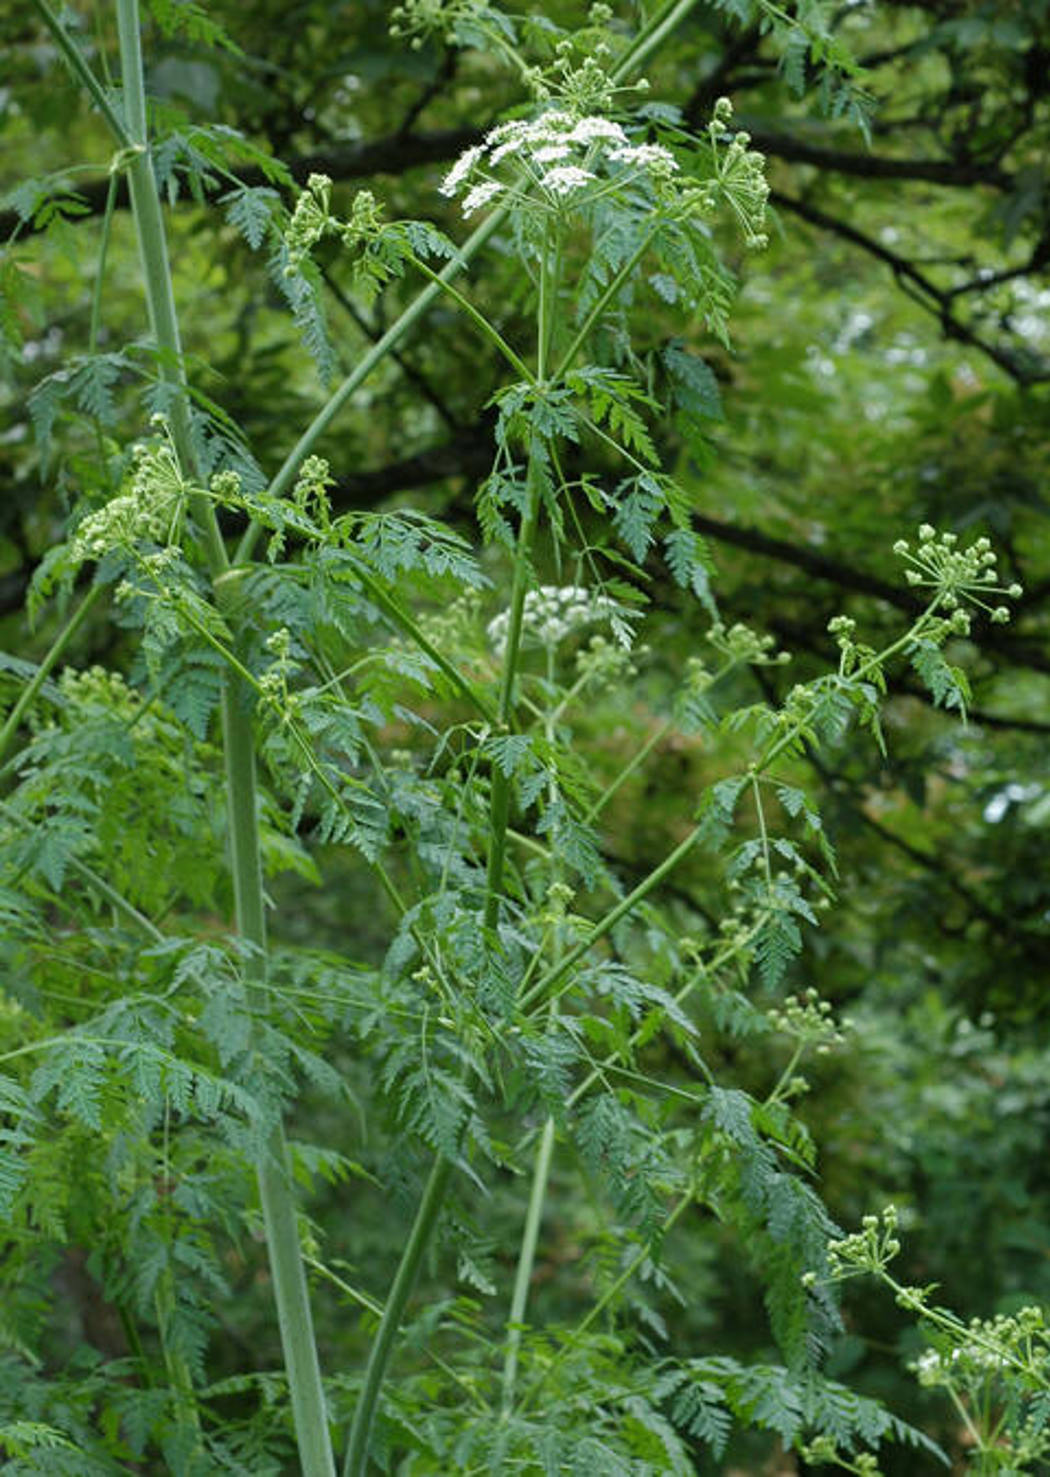 Giftkjeks har små hvite blomster på grønn stengel